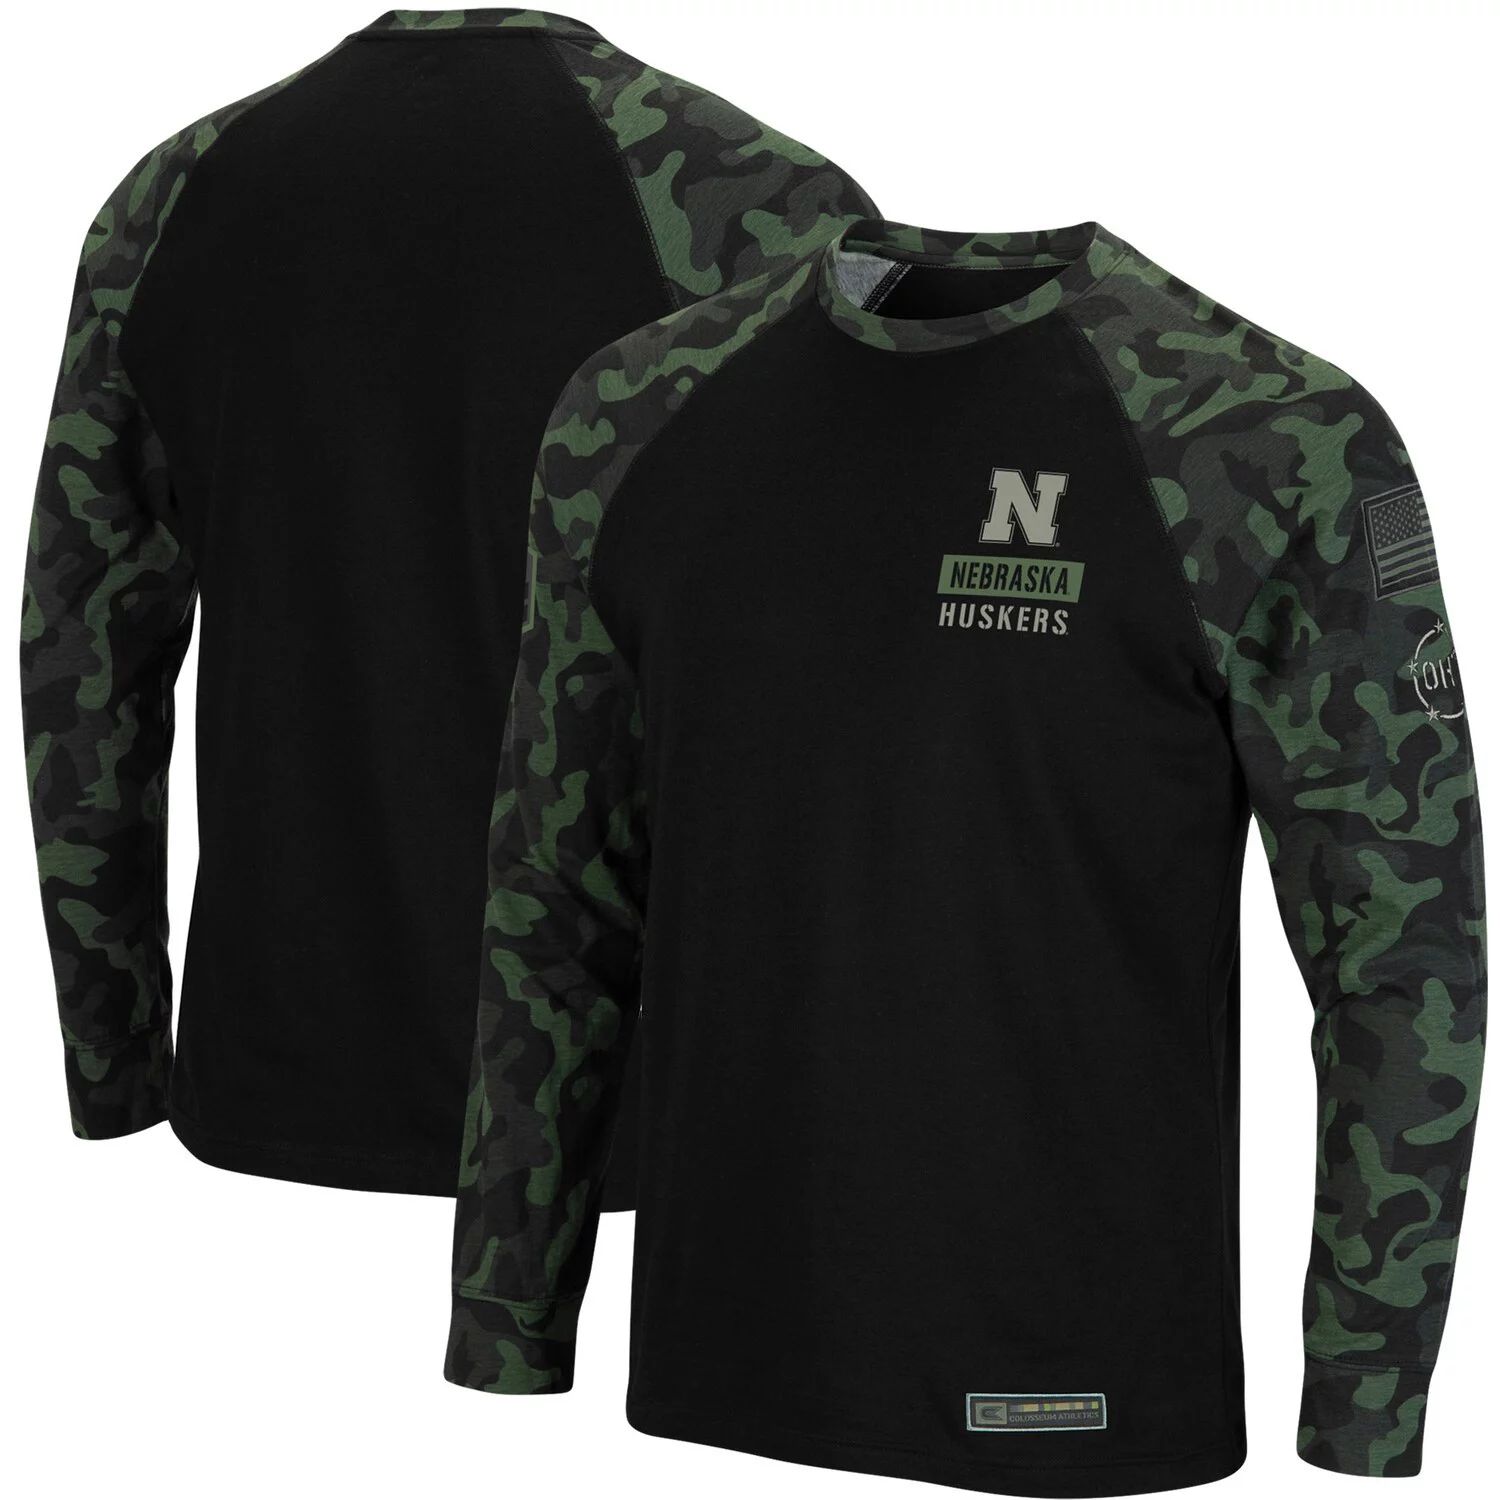 Мужская черная футболка Nebraska Huskers OHT Military Appreciation Camo Raglan с длинным рукавом Colosseum мужская черная футболка с длинным рукавом и худи в стиле милитари nebraska huskers oht colosseum